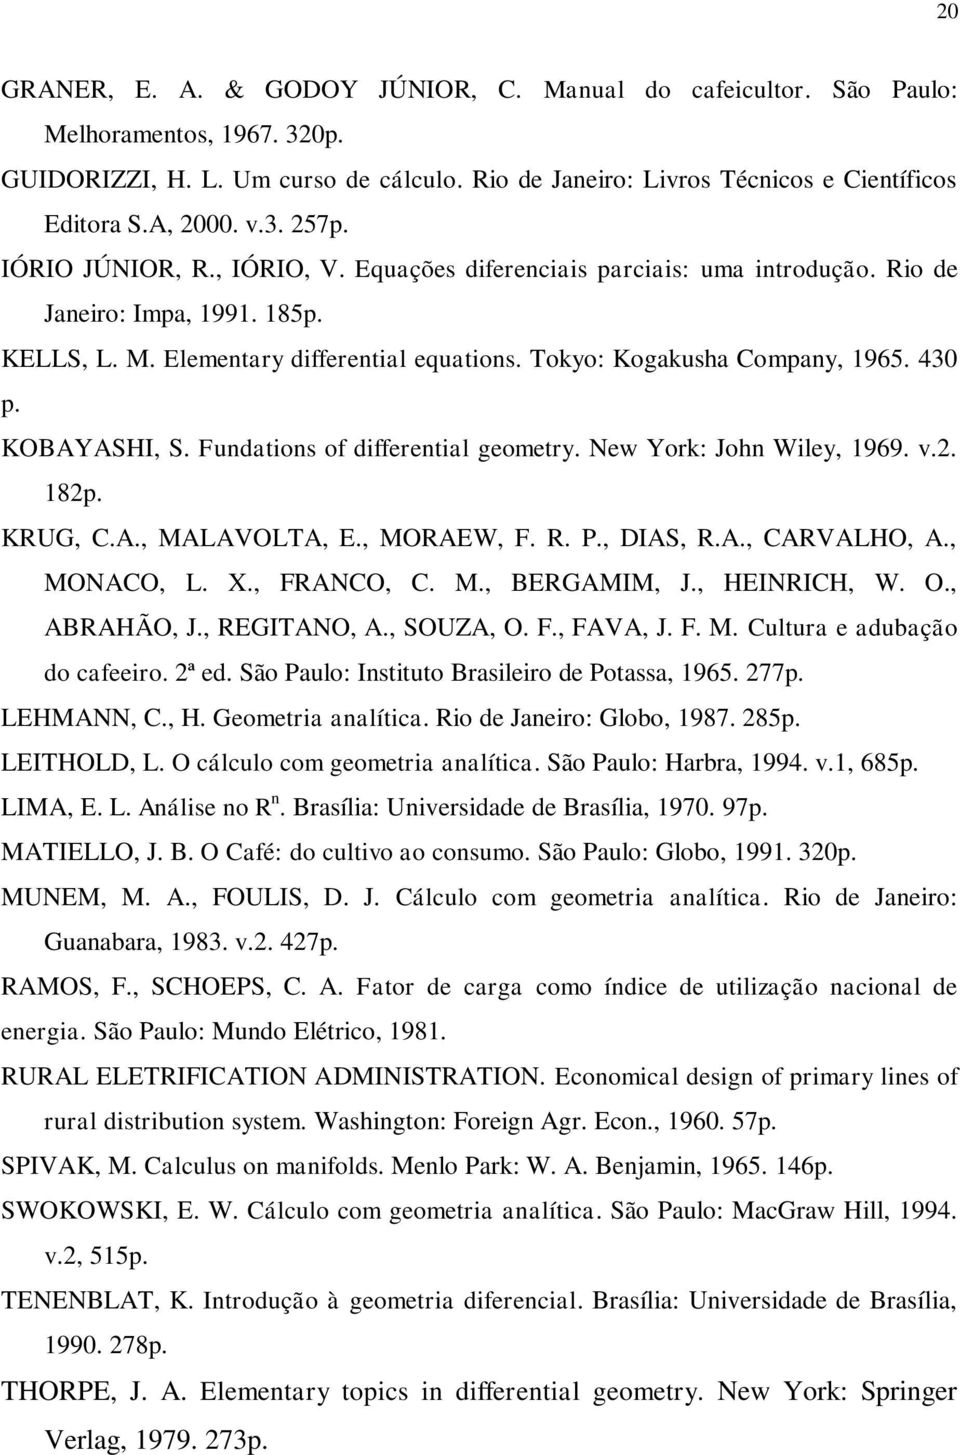 Fundations of differential geometr. New York: John Wile, 969. v.. 8. KRUG, C.A., MALAVOLTA, E., MORAEW, F. R. P., DIAS, R.A., CARVALHO, A., MONACO, L. X., FRANCO, C. M., BERGAMIM, J., HEINRICH, W. O.